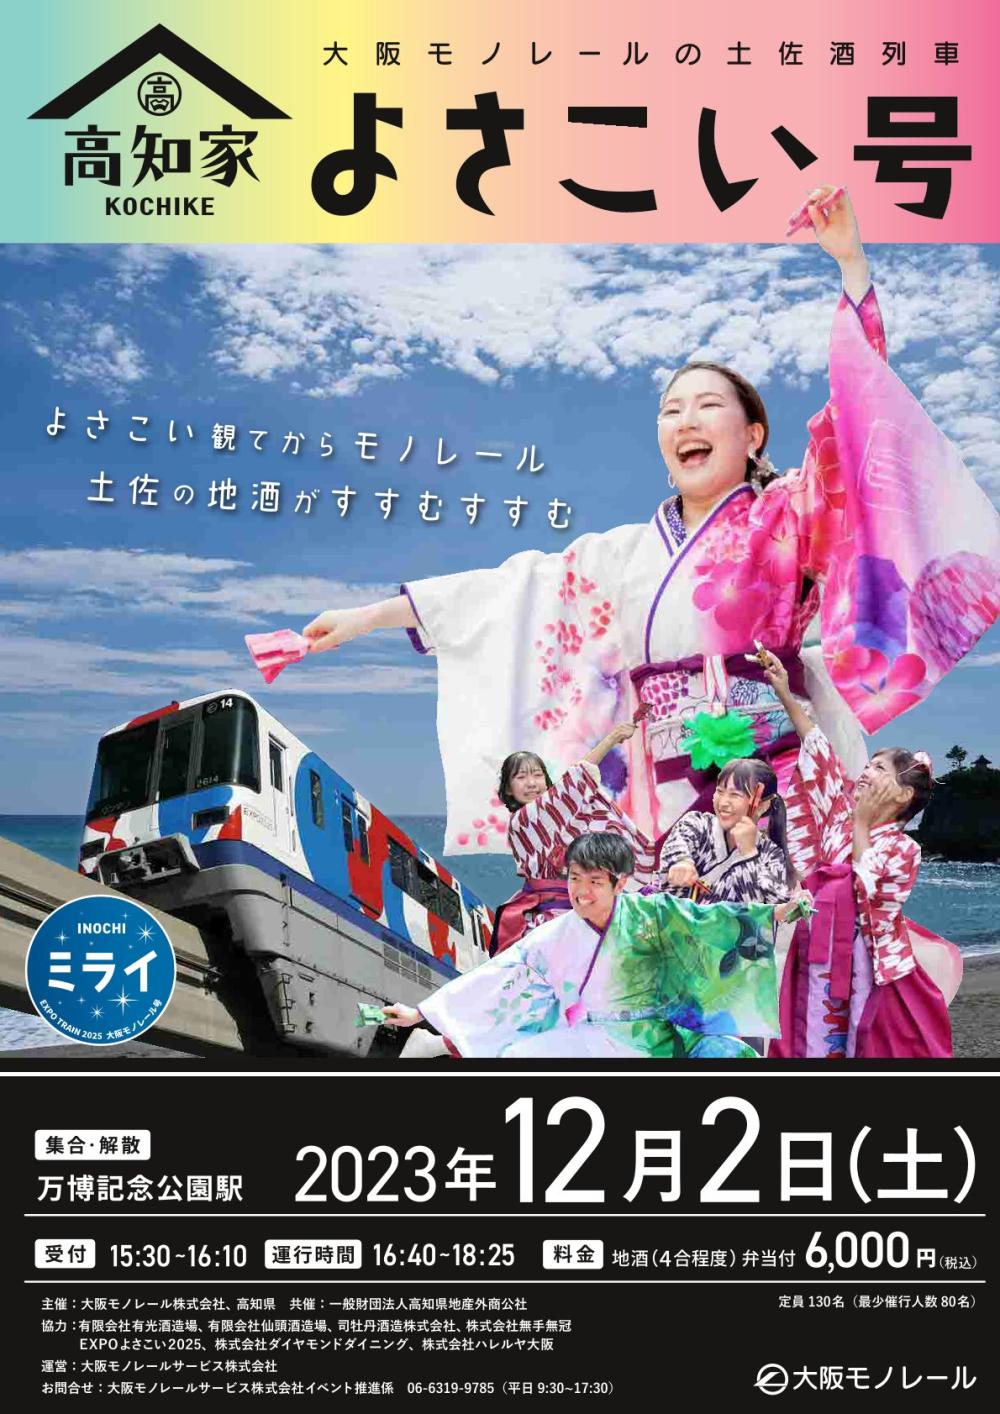 大阪モノレールの土佐酒列車「高知家よさこい号」運行